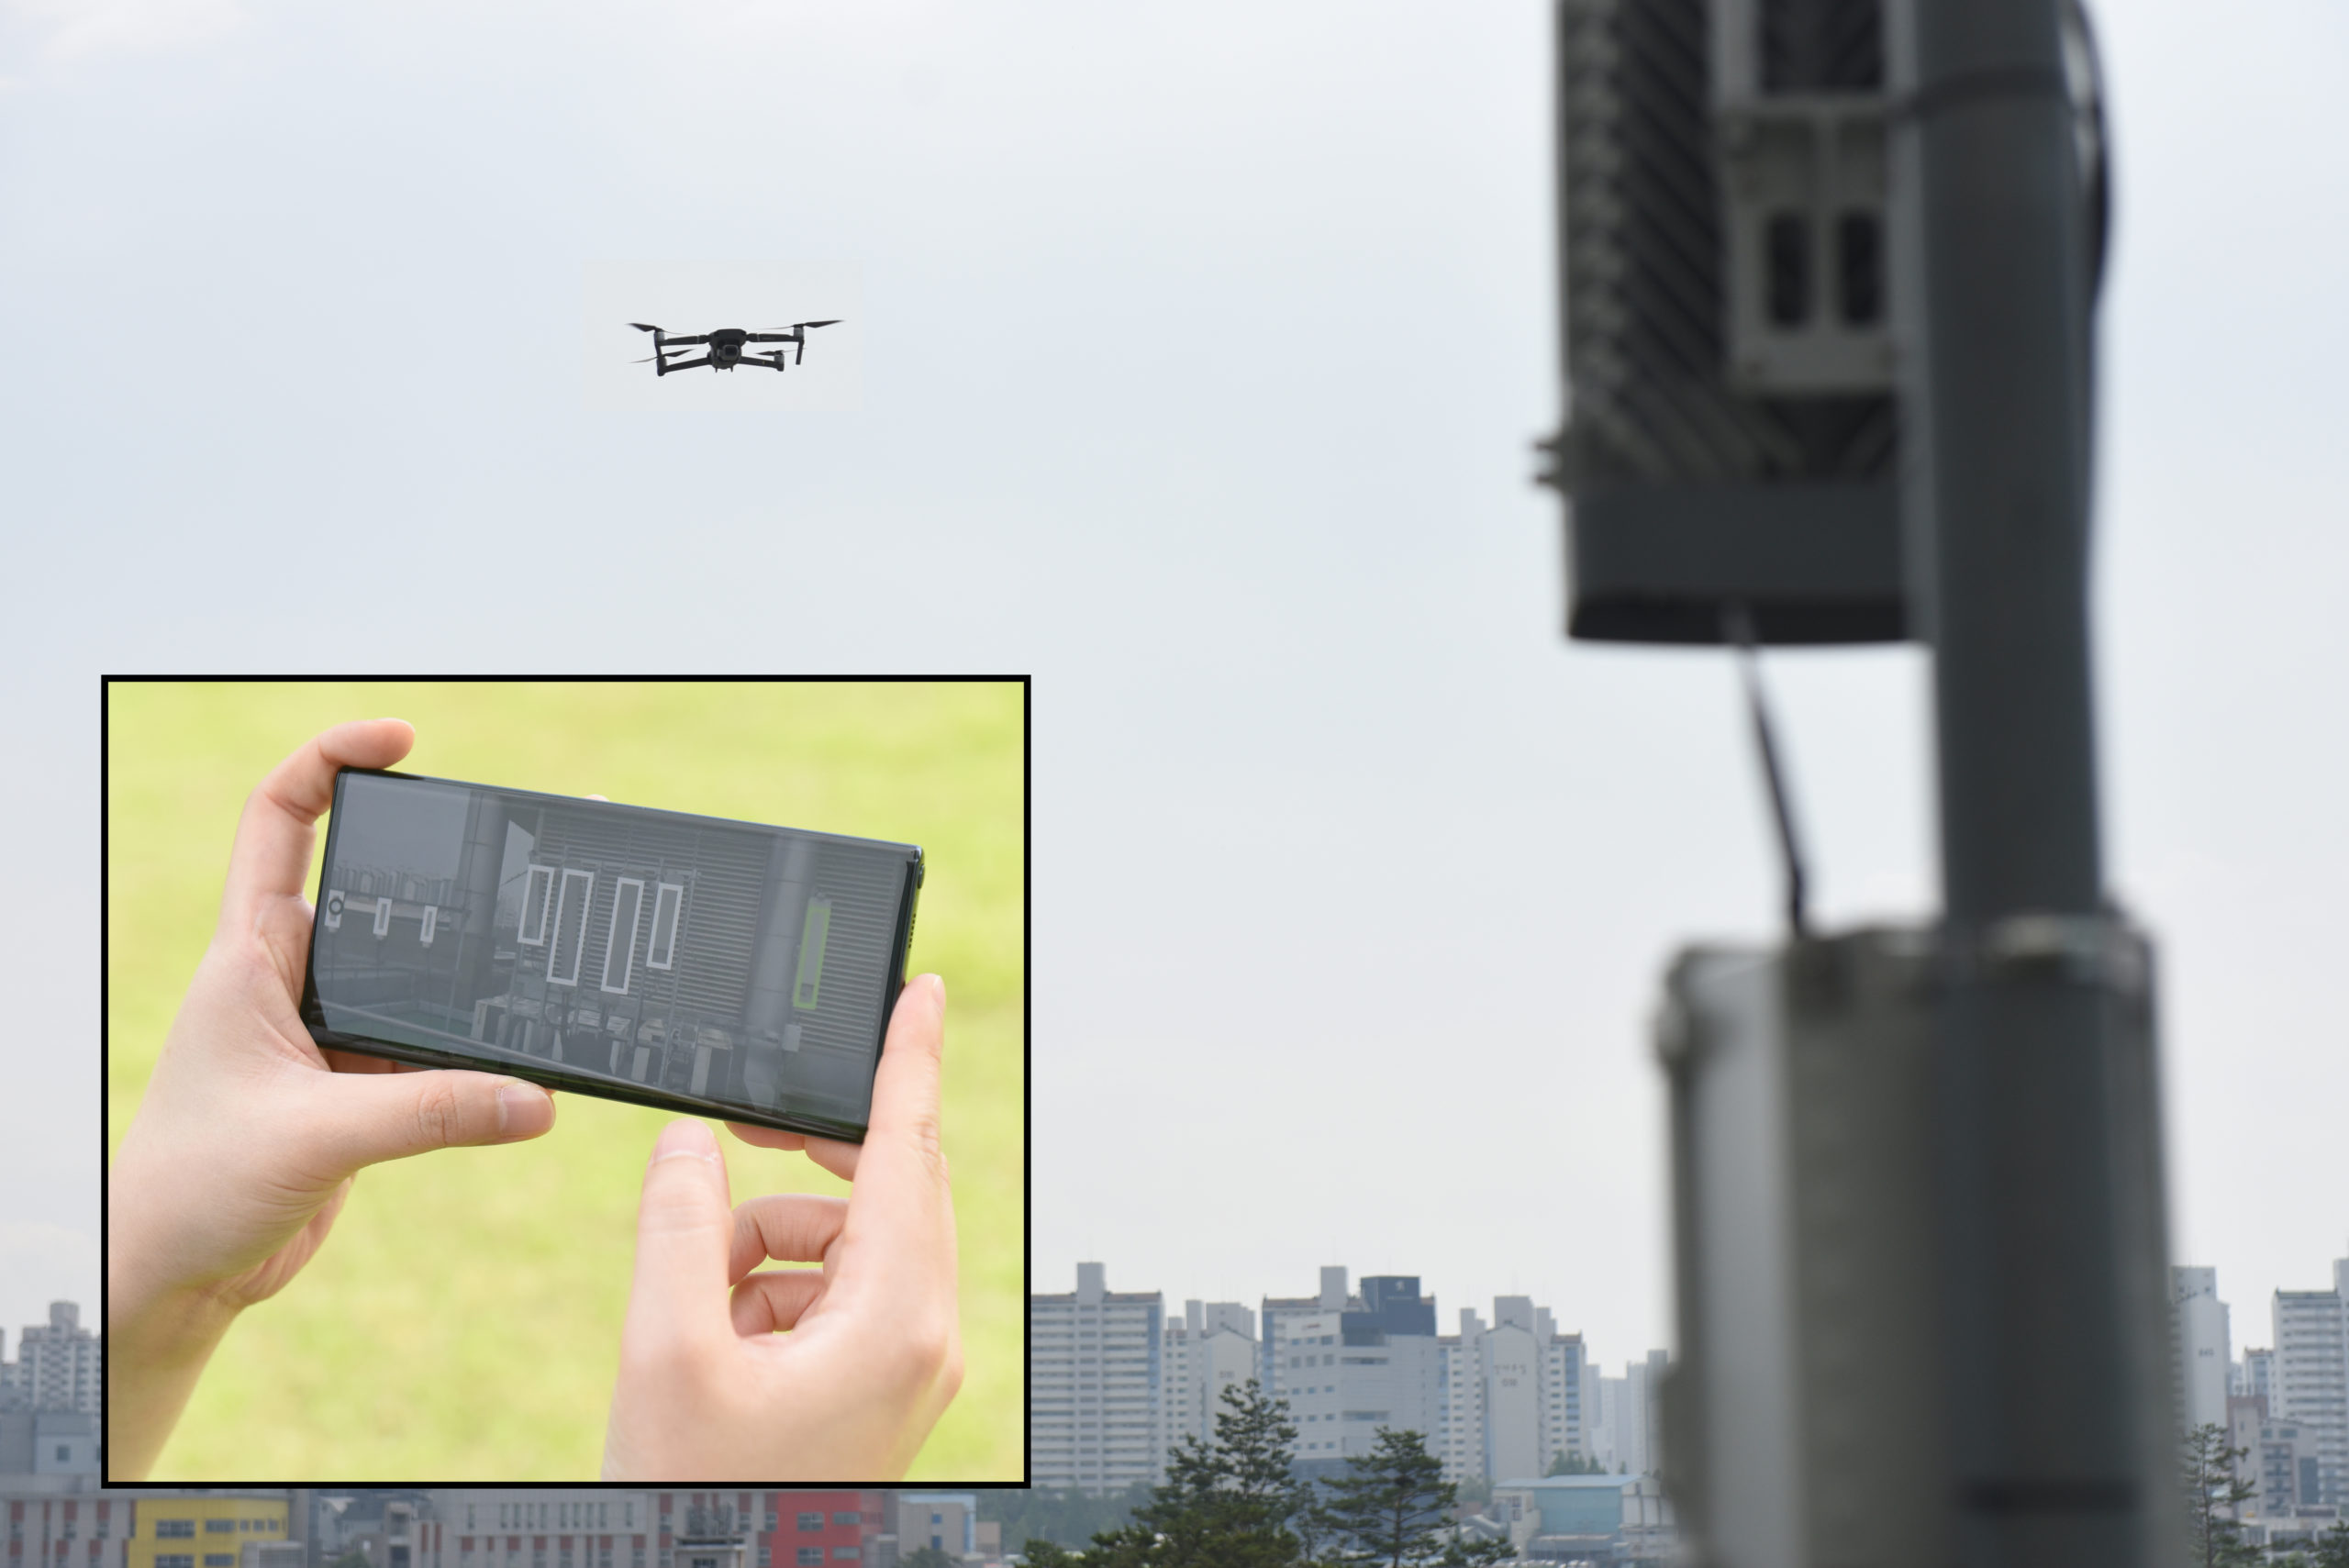 Os drones serão controlados pelo celular e a expectativa é de usar o sistema até o final do ano